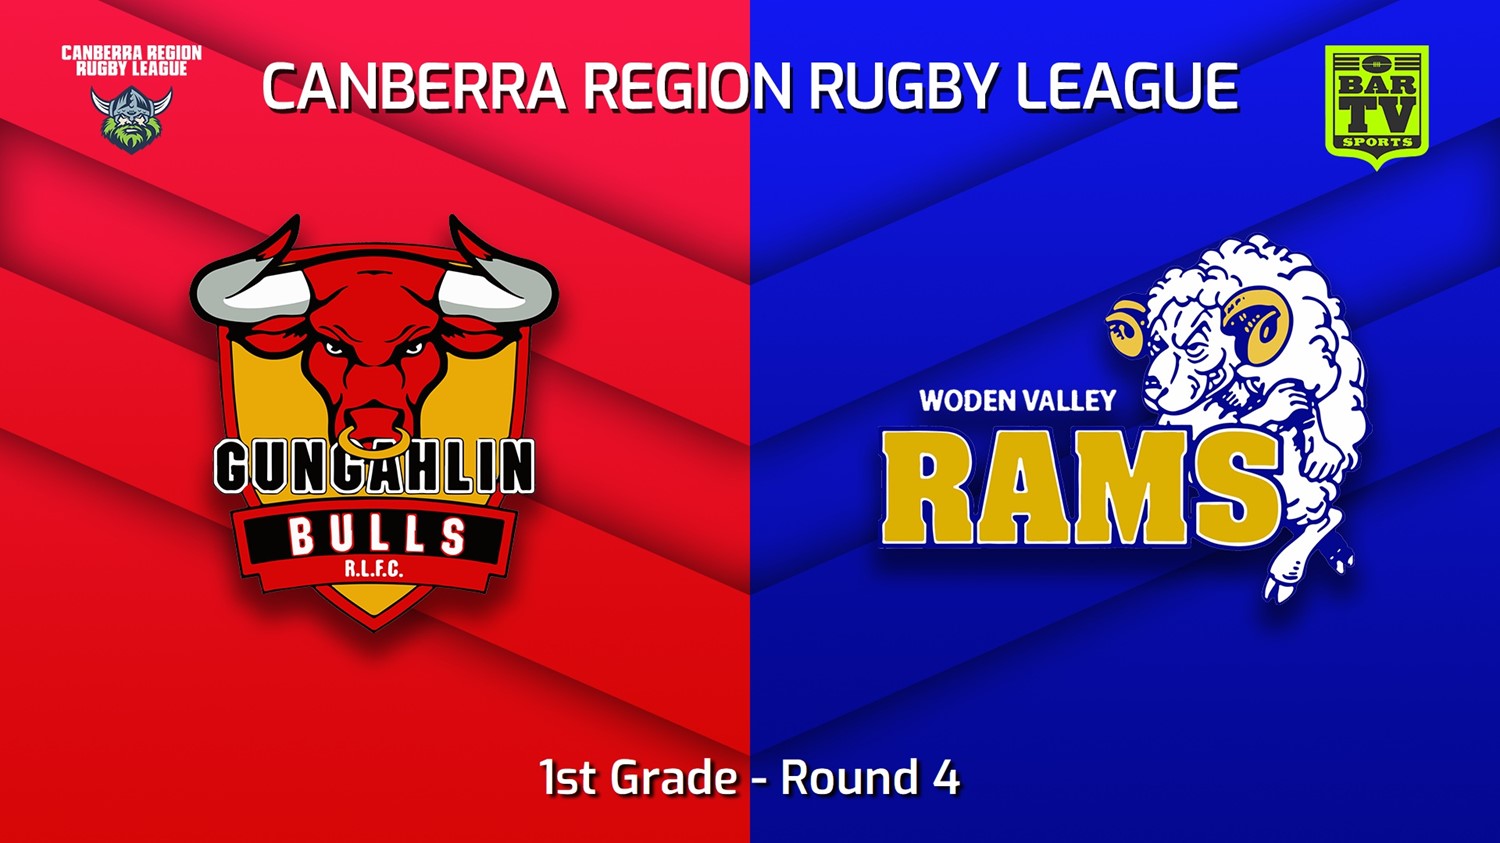 230506-Canberra Round 4 - 1st Grade - Gungahlin Bulls v Woden Valley Rams Slate Image